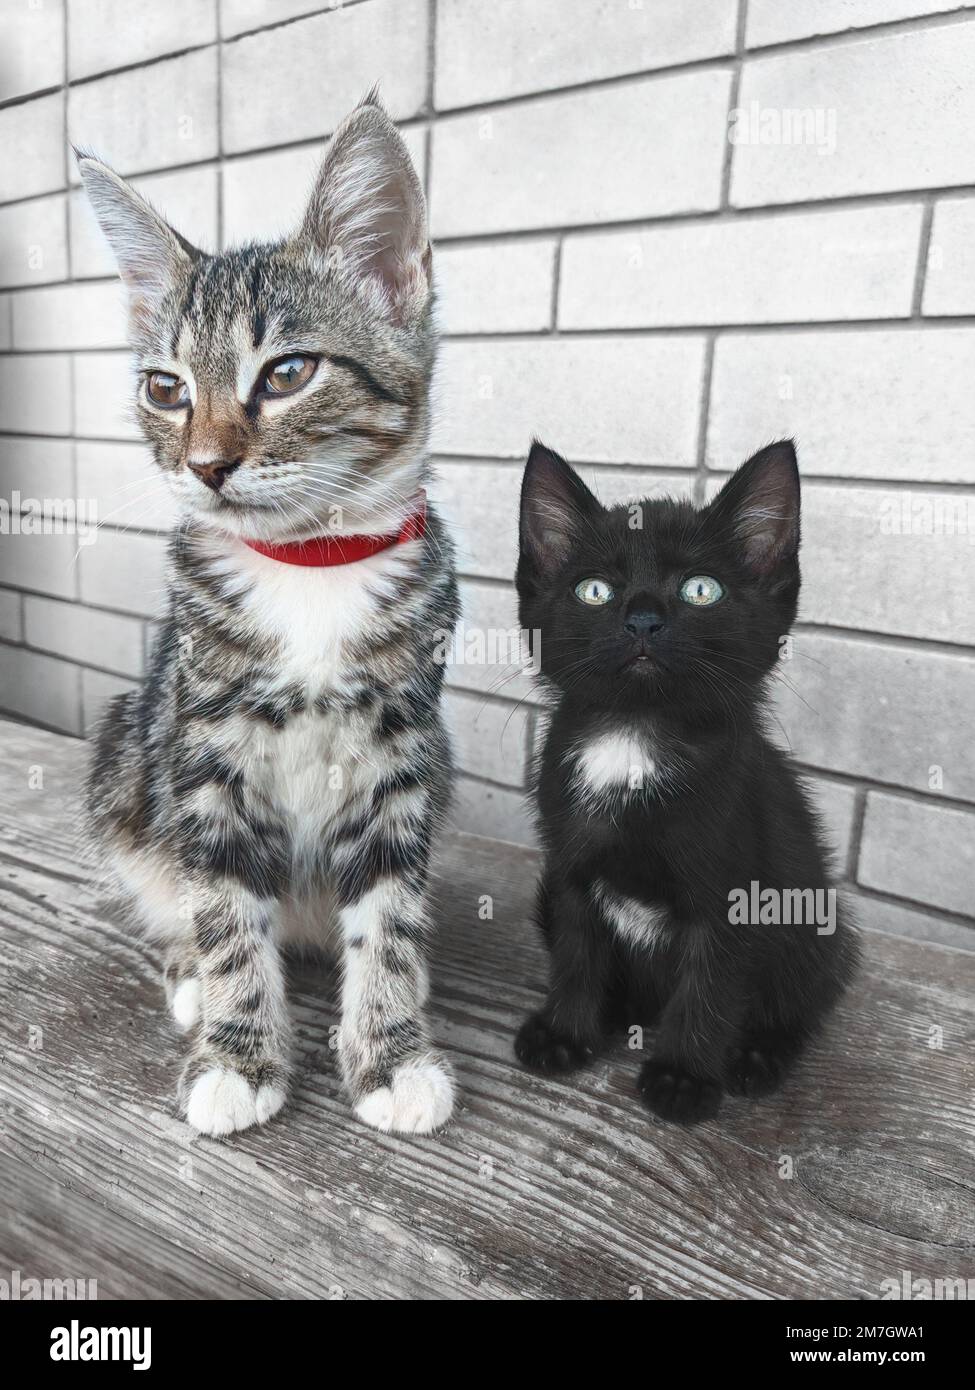 beau chat tabby gris avec un col rouge se trouve contre un mur de briques, un joli chaton noir avec un point blanc sur la poitrine se trouve à proximité. Banque D'Images